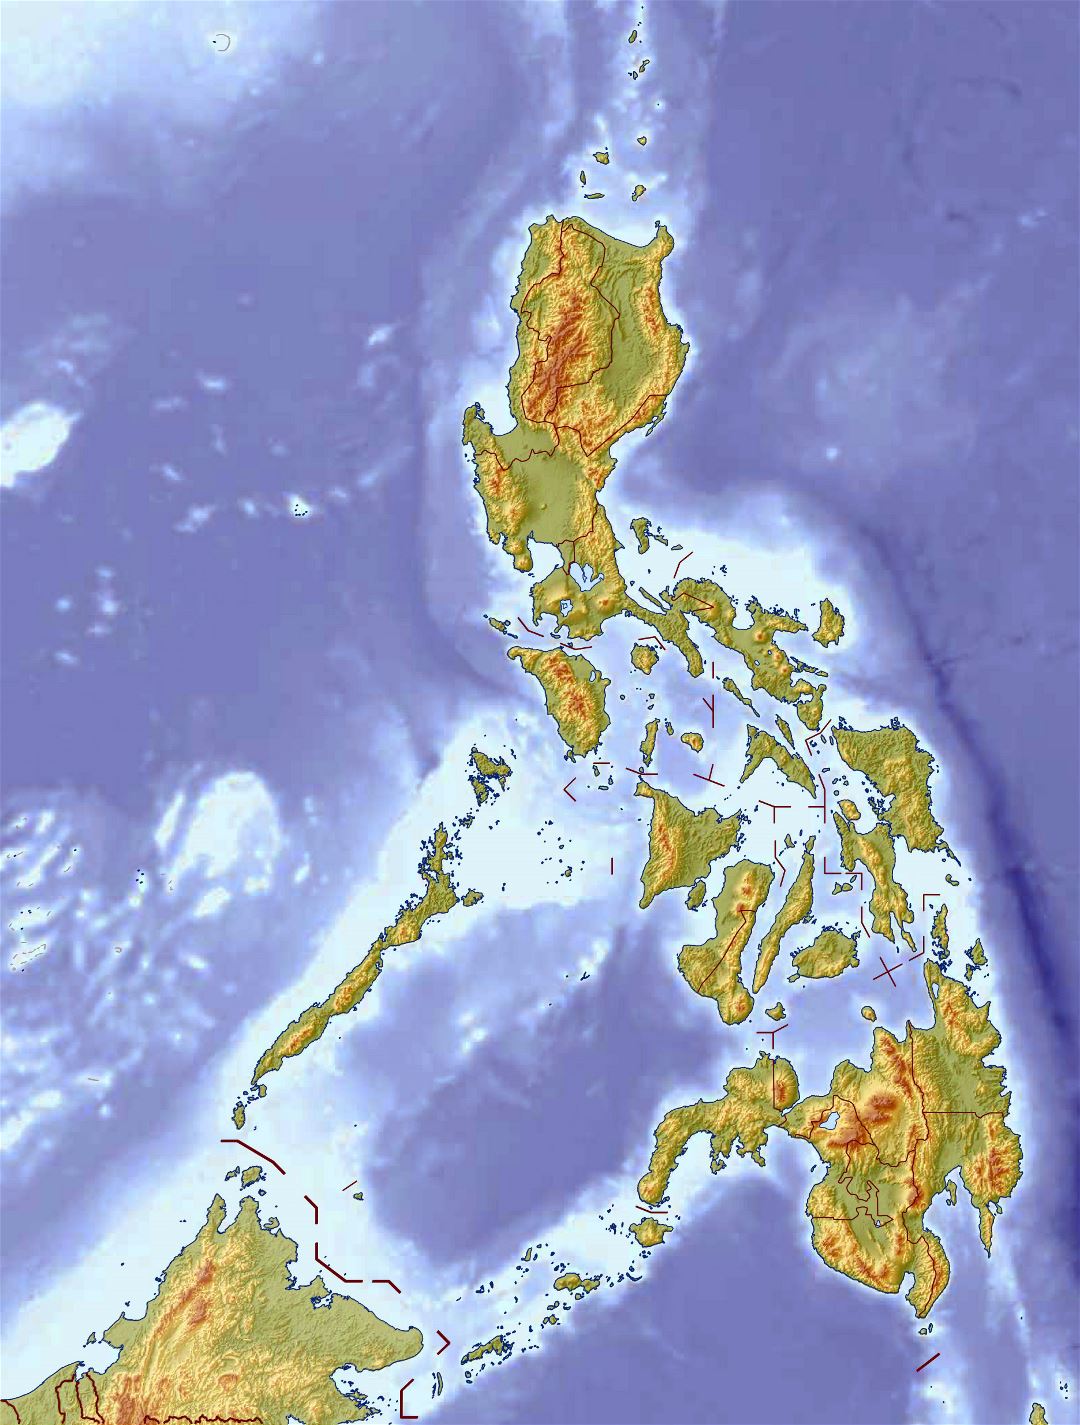 Grande detallado mapa en relieve de Filipinas